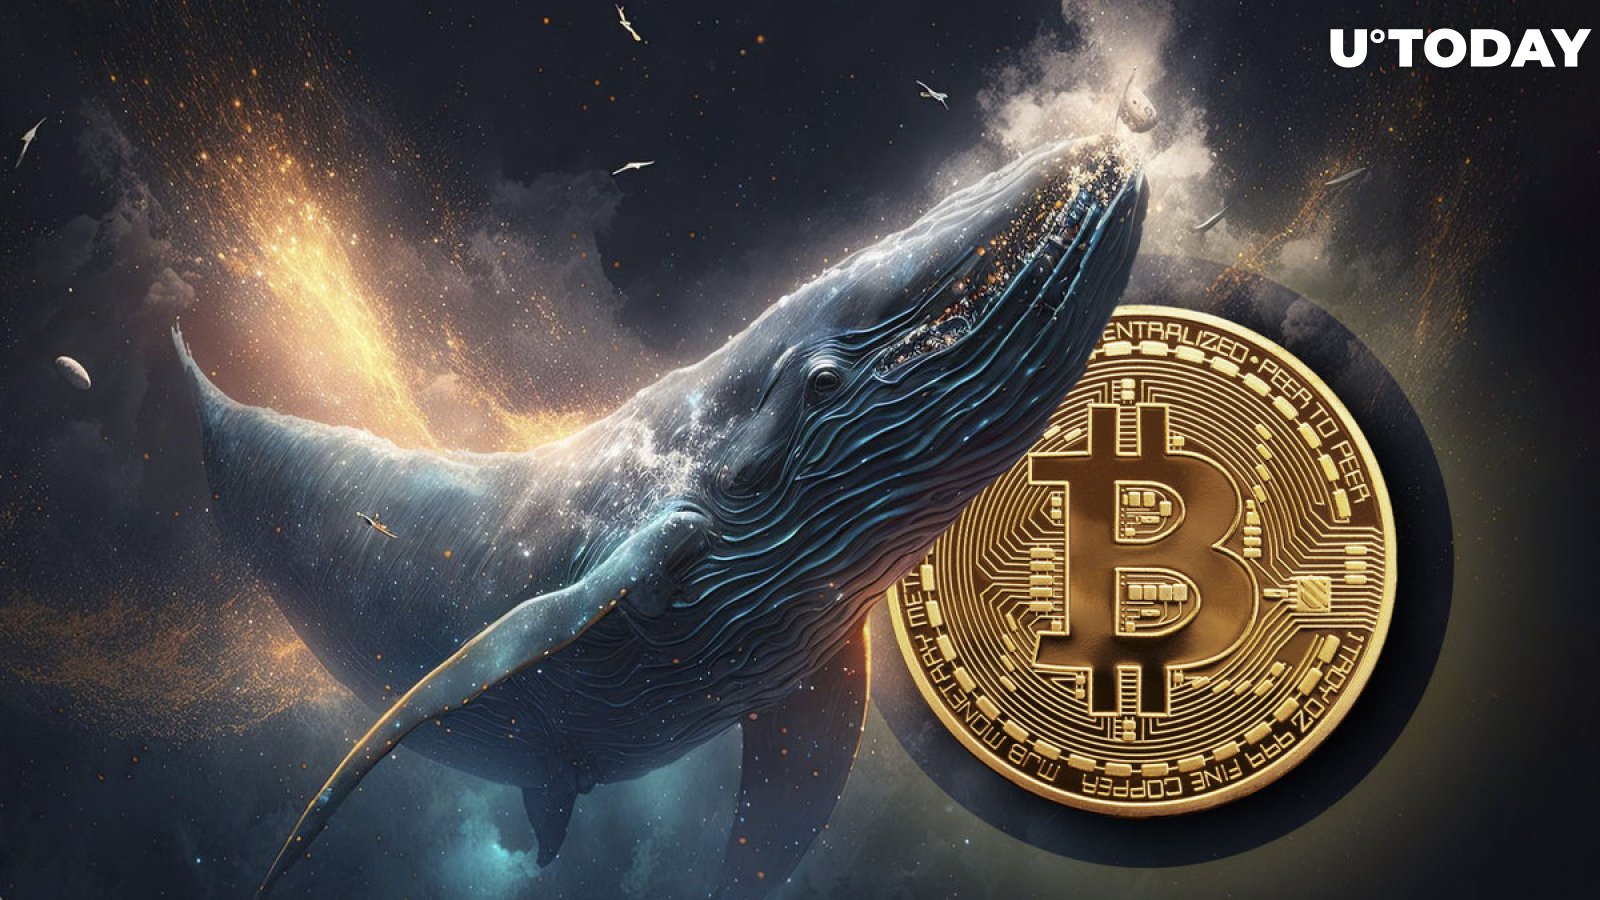 Le balene Bitcoin (BTC) incassano 2.20 miliardi di dollari in una settimana: qual è il motivo?